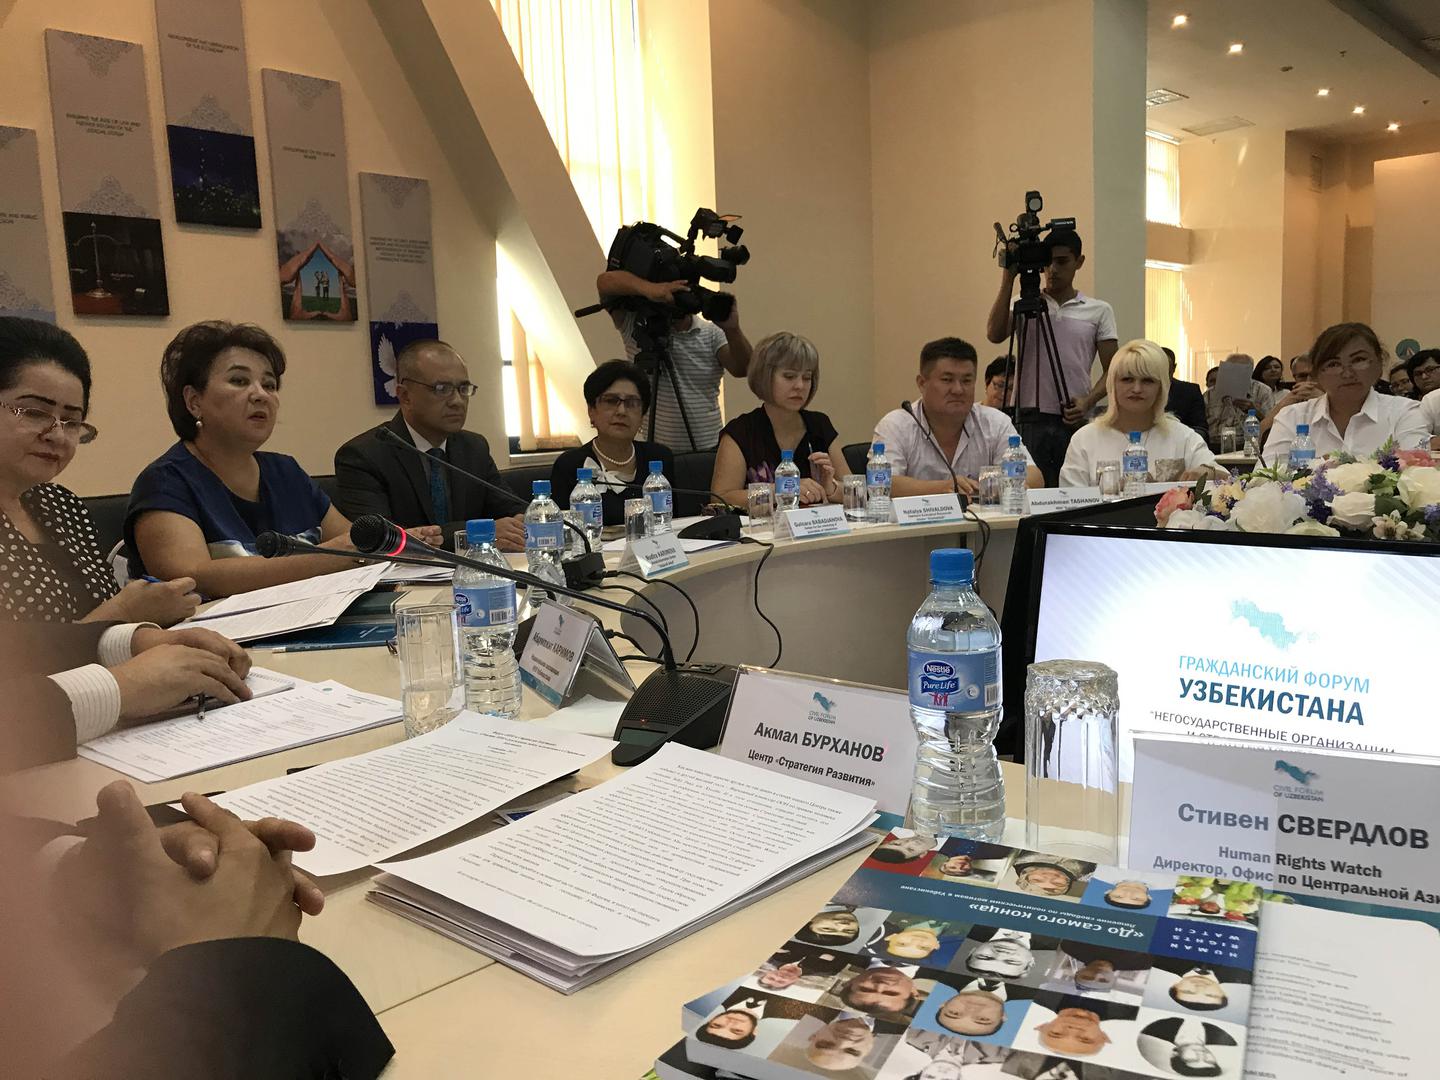 Пресс-конференция Хьюман Райтс Вотч и представителей неправительственных организаций в национальном центре «Стратегия развития», Ташкент, сентябрь 2017 г.